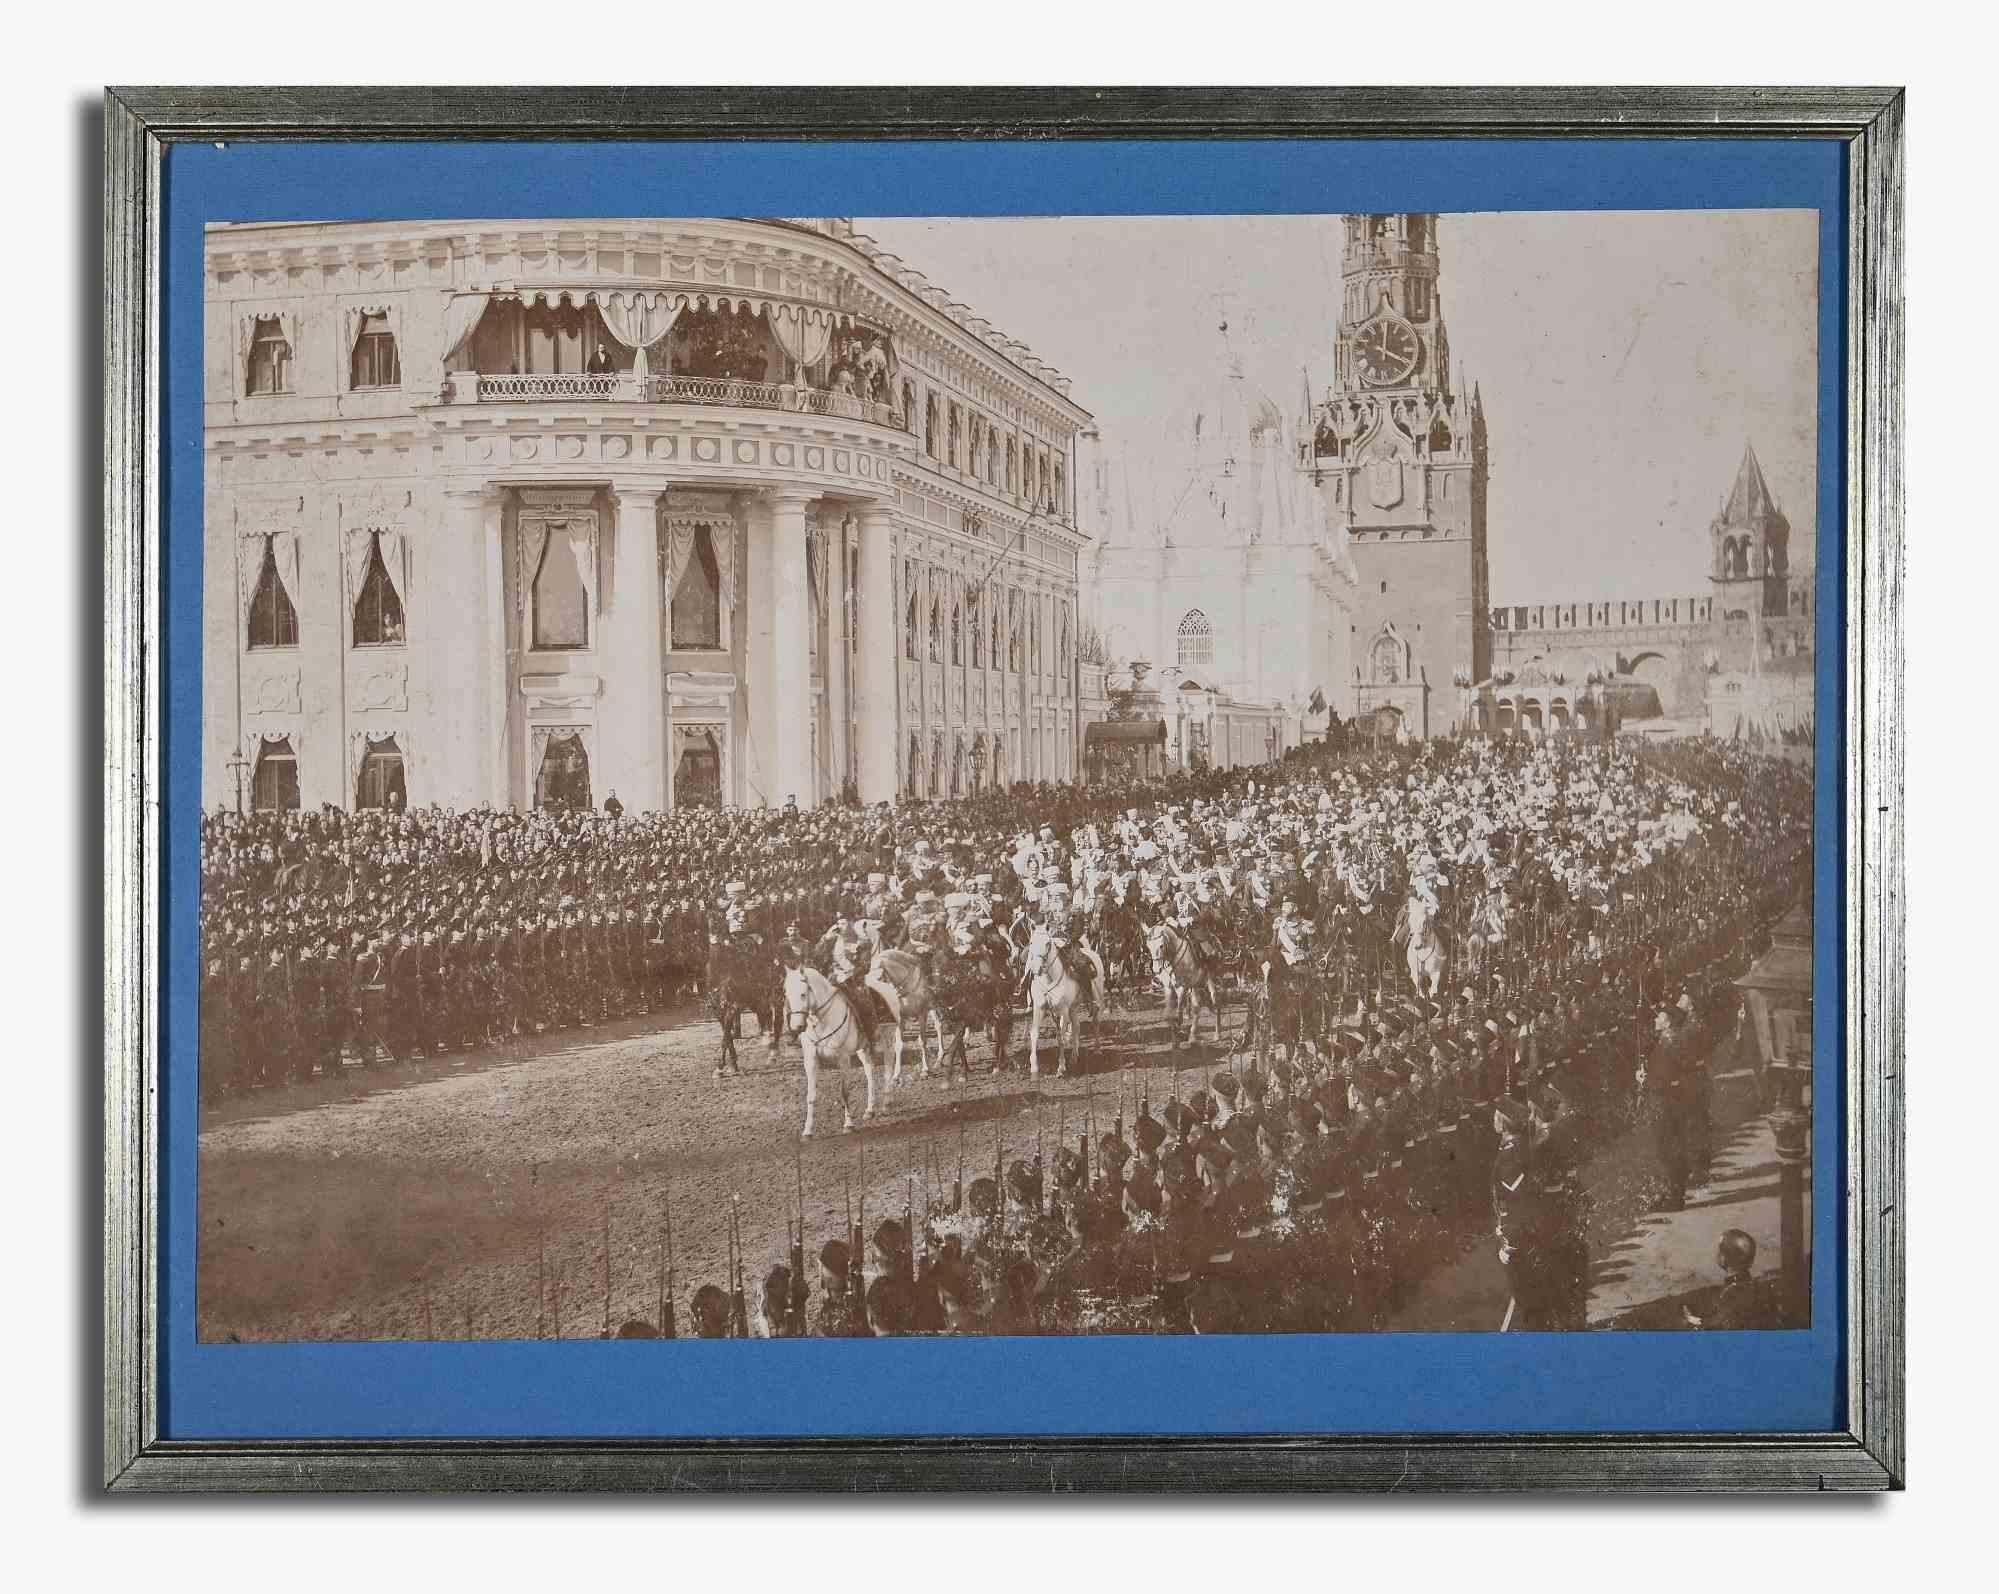 Die Moskauer Parade ist ein originelles modernes Kunstwerk, das Ende des 19. Jahrhunderts von Karl Bulla geschaffen wurde.

Original-Schwarz-Weiß-Foto.

Das Kunstwerk stellt eine Parade in Moskau dar.

Inklusive Rahmen (guter Zustand): 36,5 x 46,5